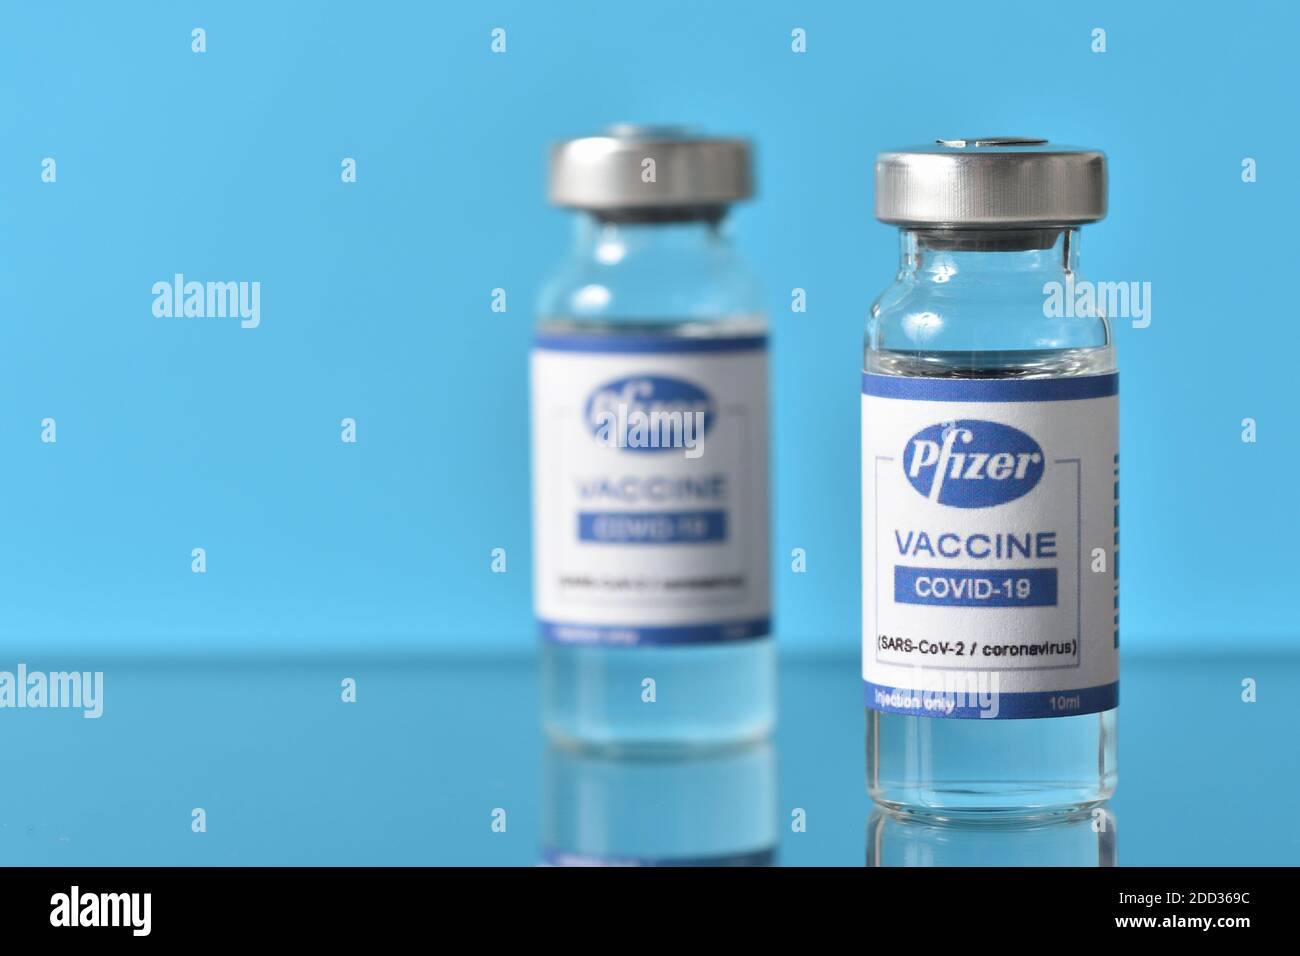 STARIY OSKOL, RUSIA - 23 DE NOVIEMBRE de 2020: La vacuna contra el coronavirus anunciada por Pfizer y BioNTech sobre fondo azul Foto de stock